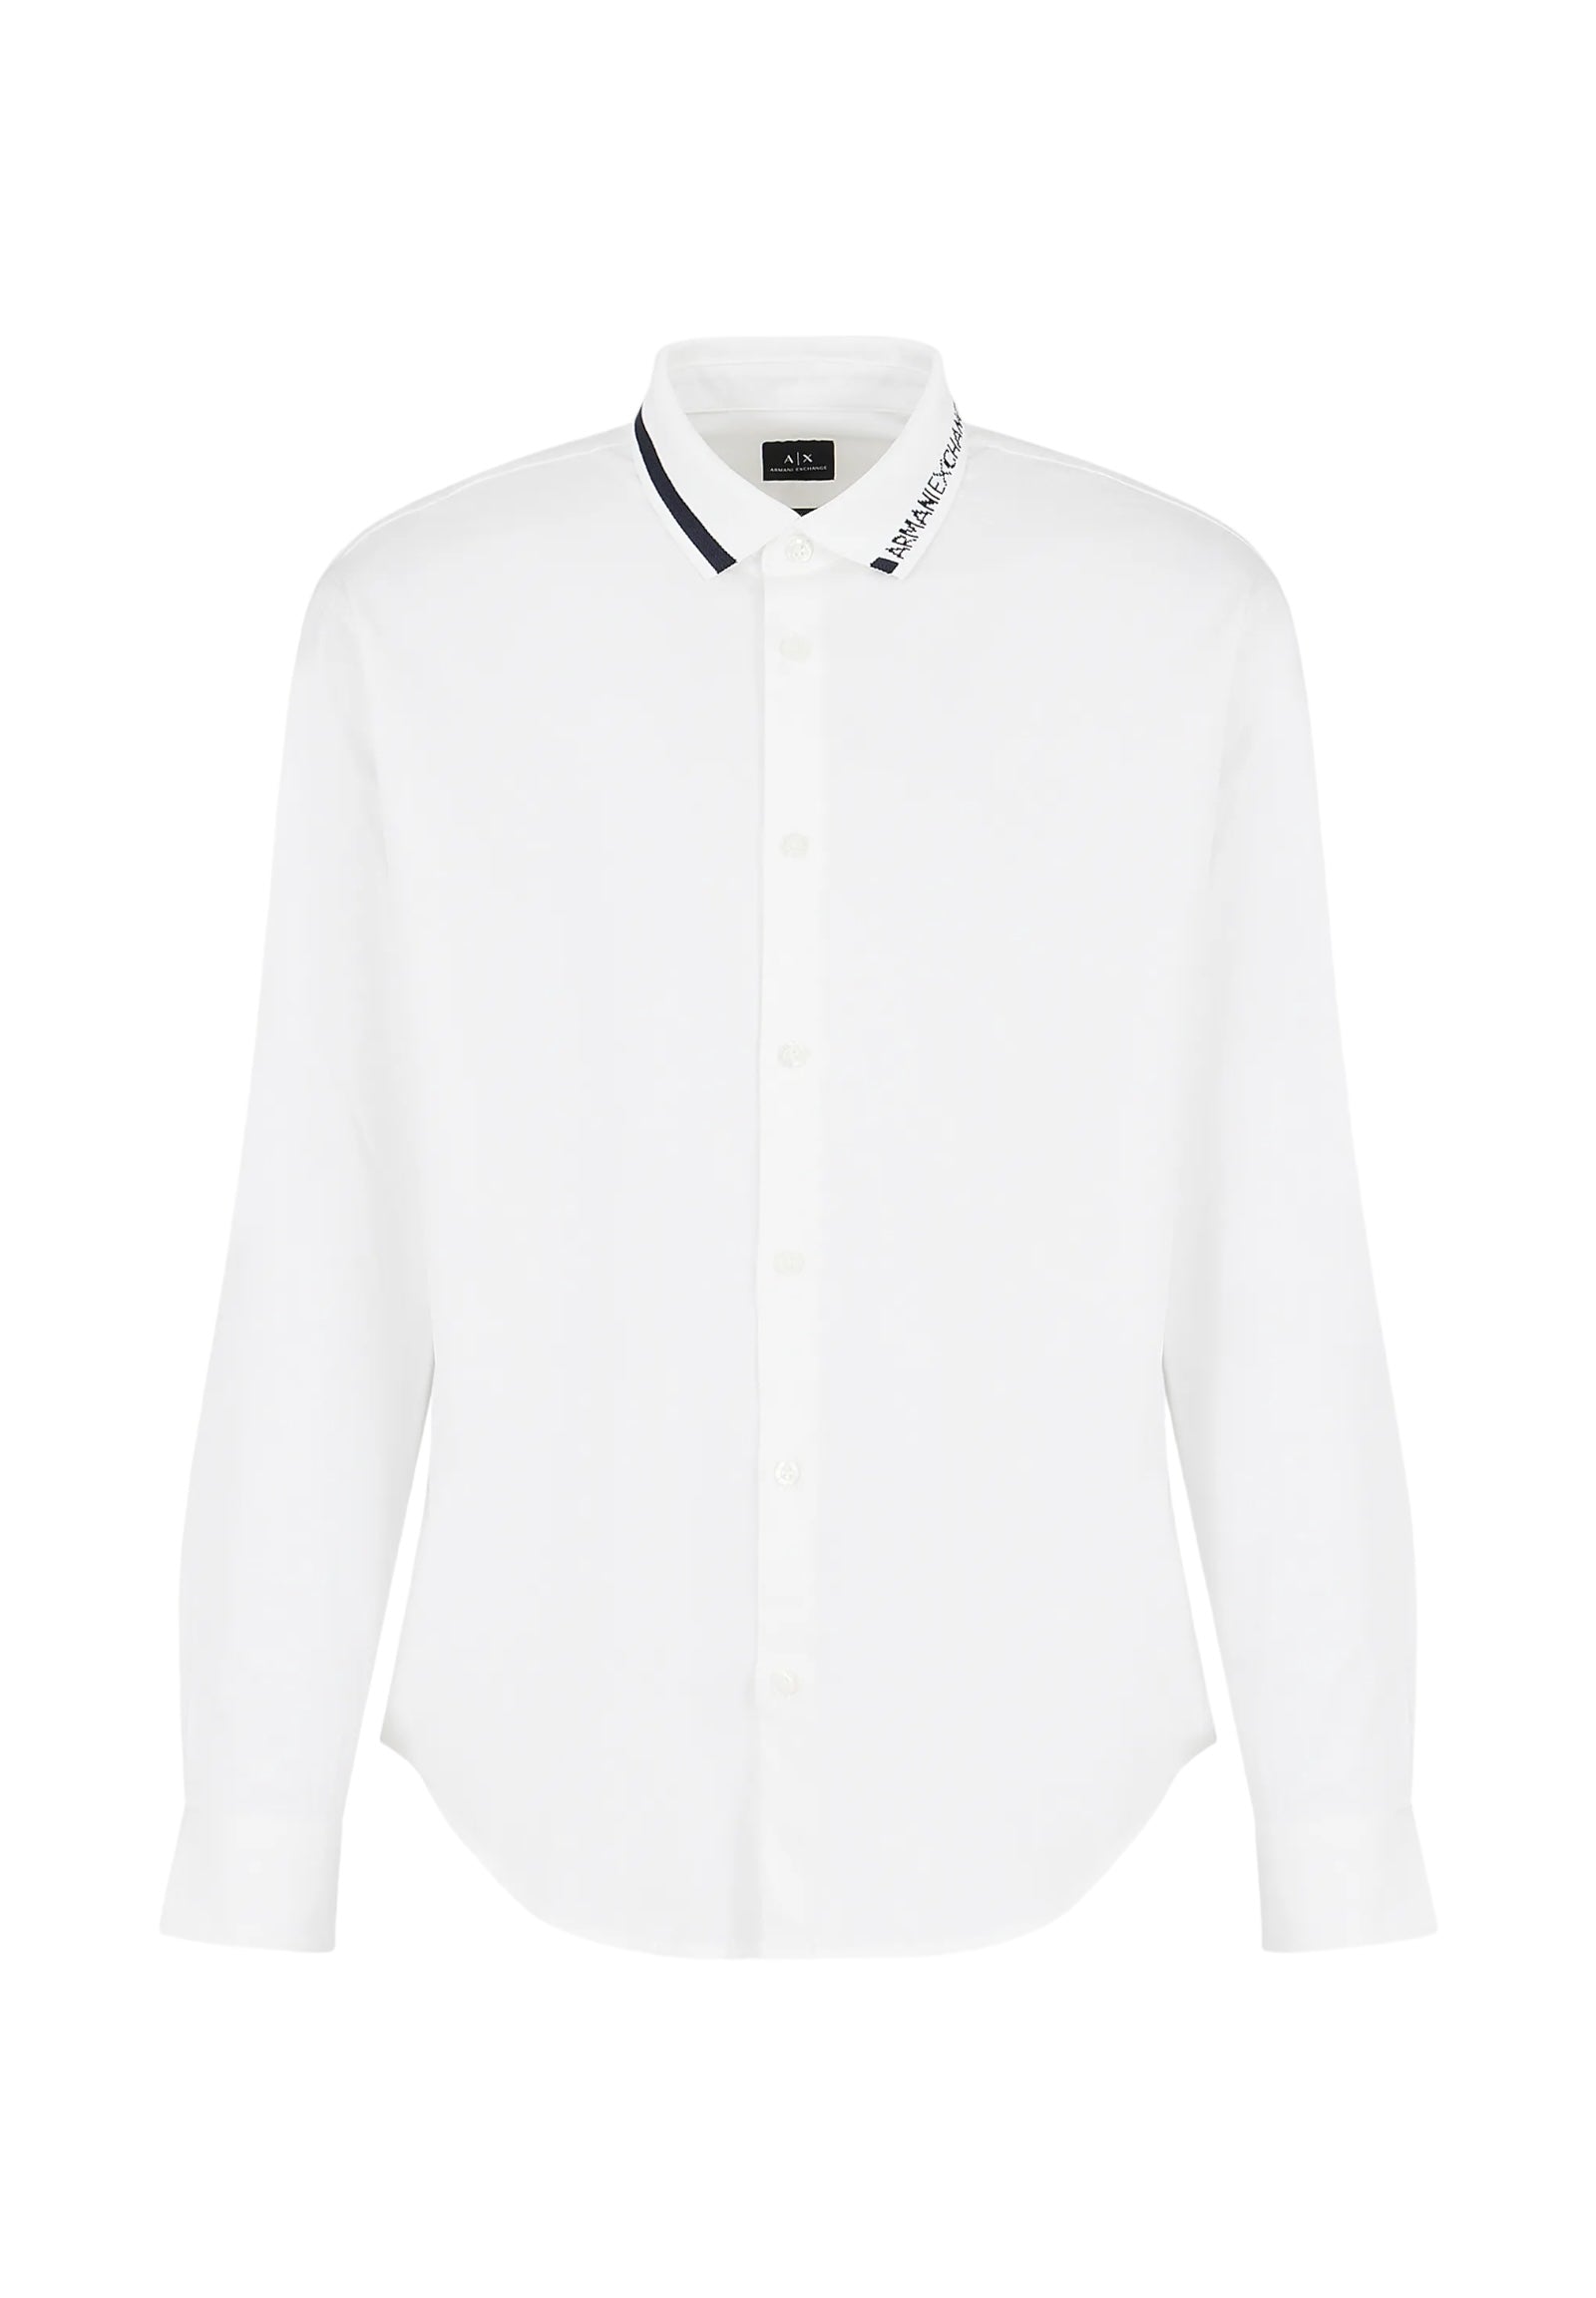 Armani Exchange Camicia A Maniche Lunghe 3dzcl6 Off White